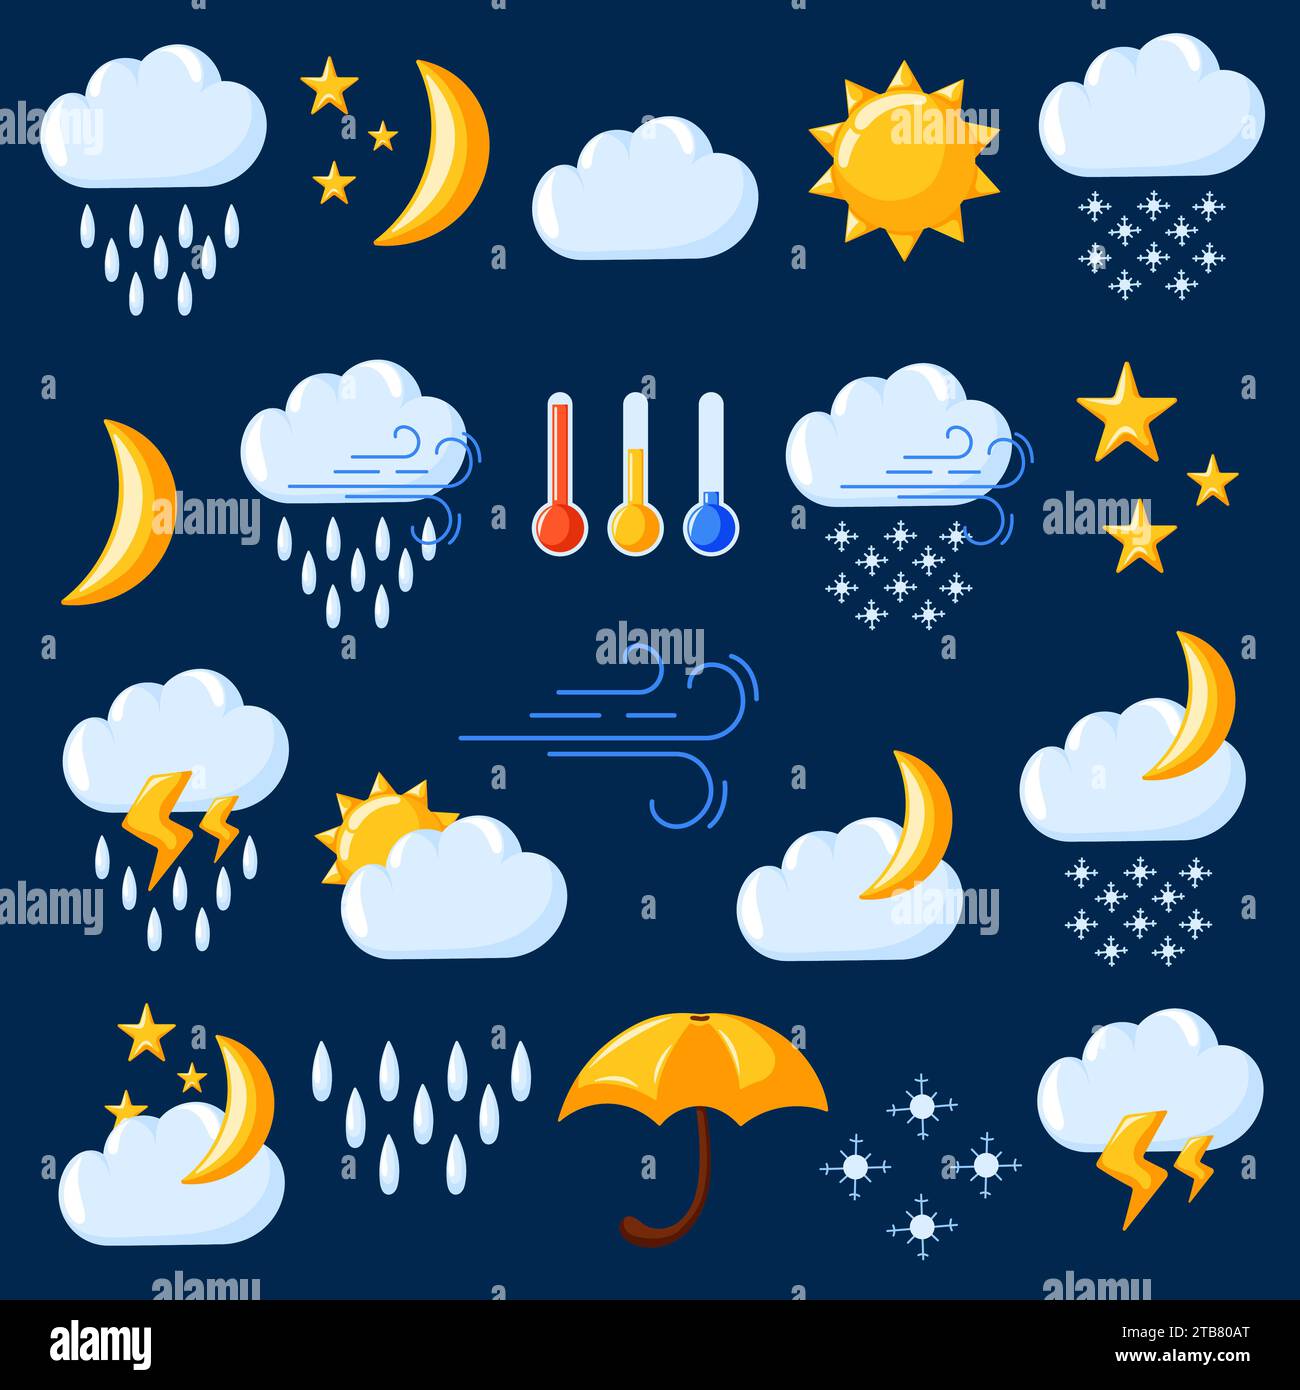 Wettersymbole im Cartoon-Stil. Elemente für die Wettervorhersage. Gewitter, Blitz, Regen, Schauer, Wolken, Sturz-, Wind-, Kälte- und Warmthermometer Stock Vektor